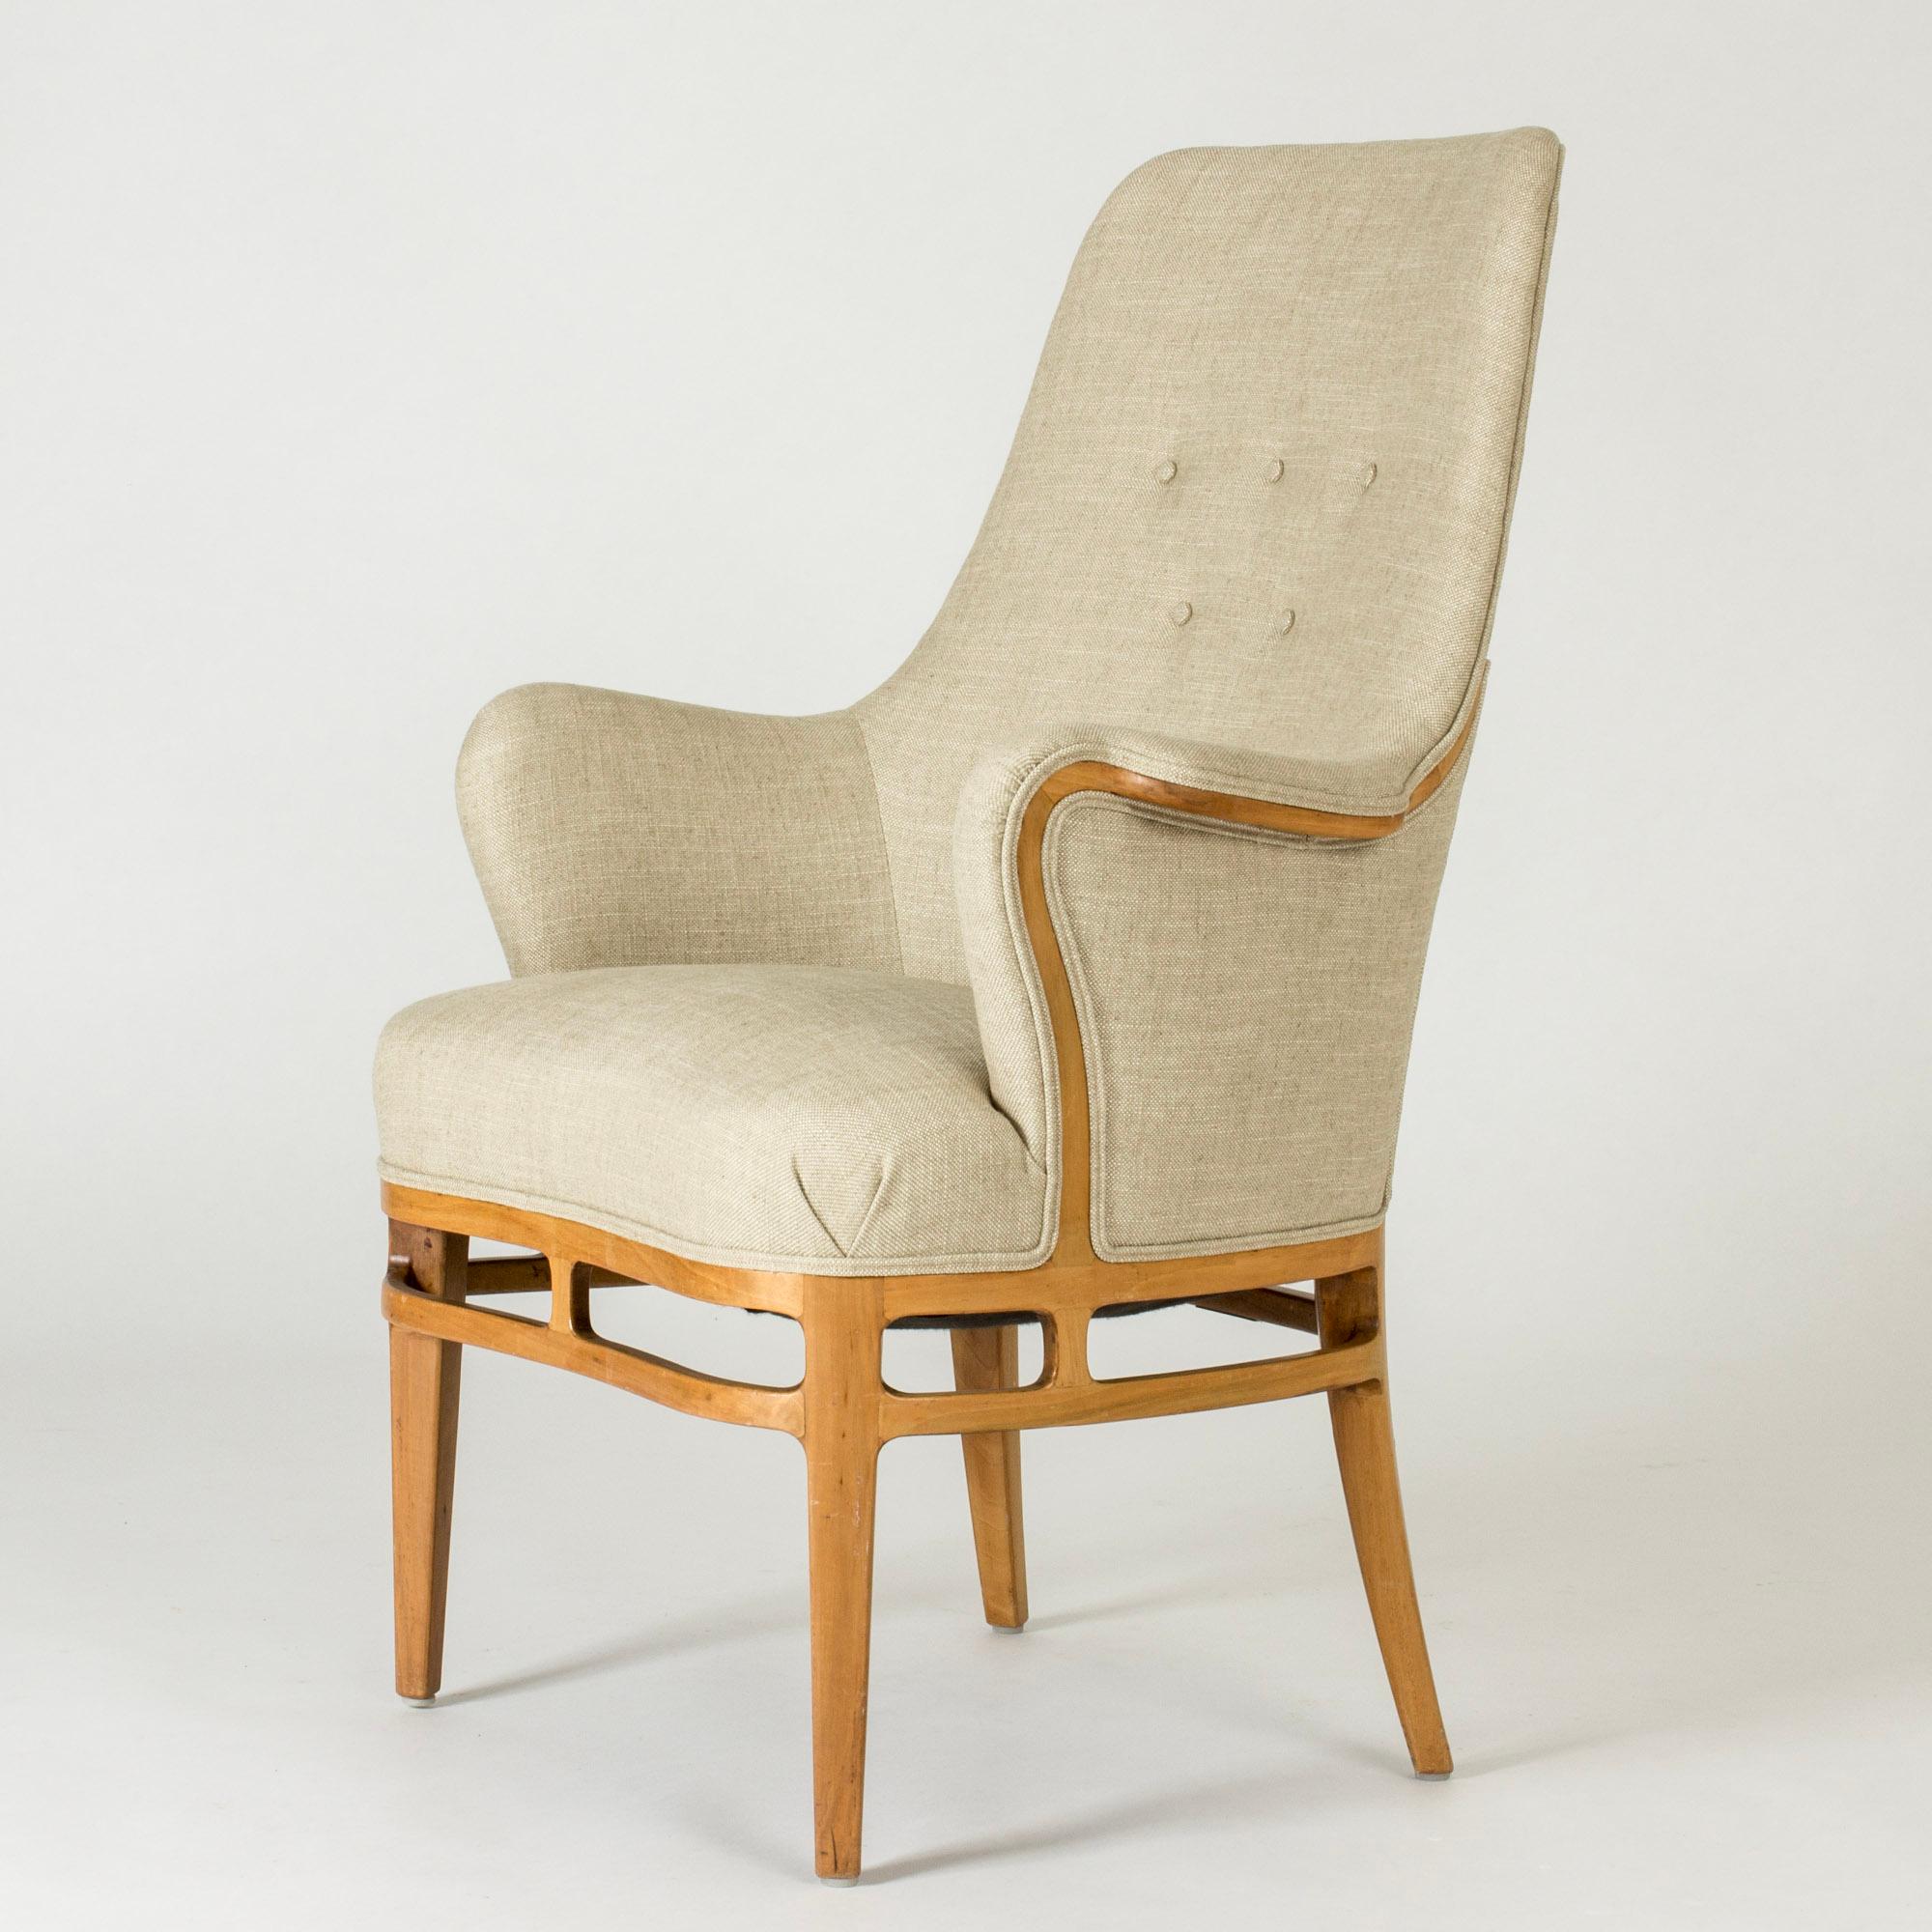 Eleganter Lounge- oder Sessel von Carl-Axel Acking, hergestellt aus Nussbaum und mit Leinen bezogen. Schönes geschnitztes Dekor um die Basis des Sitzes und Linien aus Holz, die den Kurven der Armlehnen und des Rückens folgen. Dekorative Paspeln.